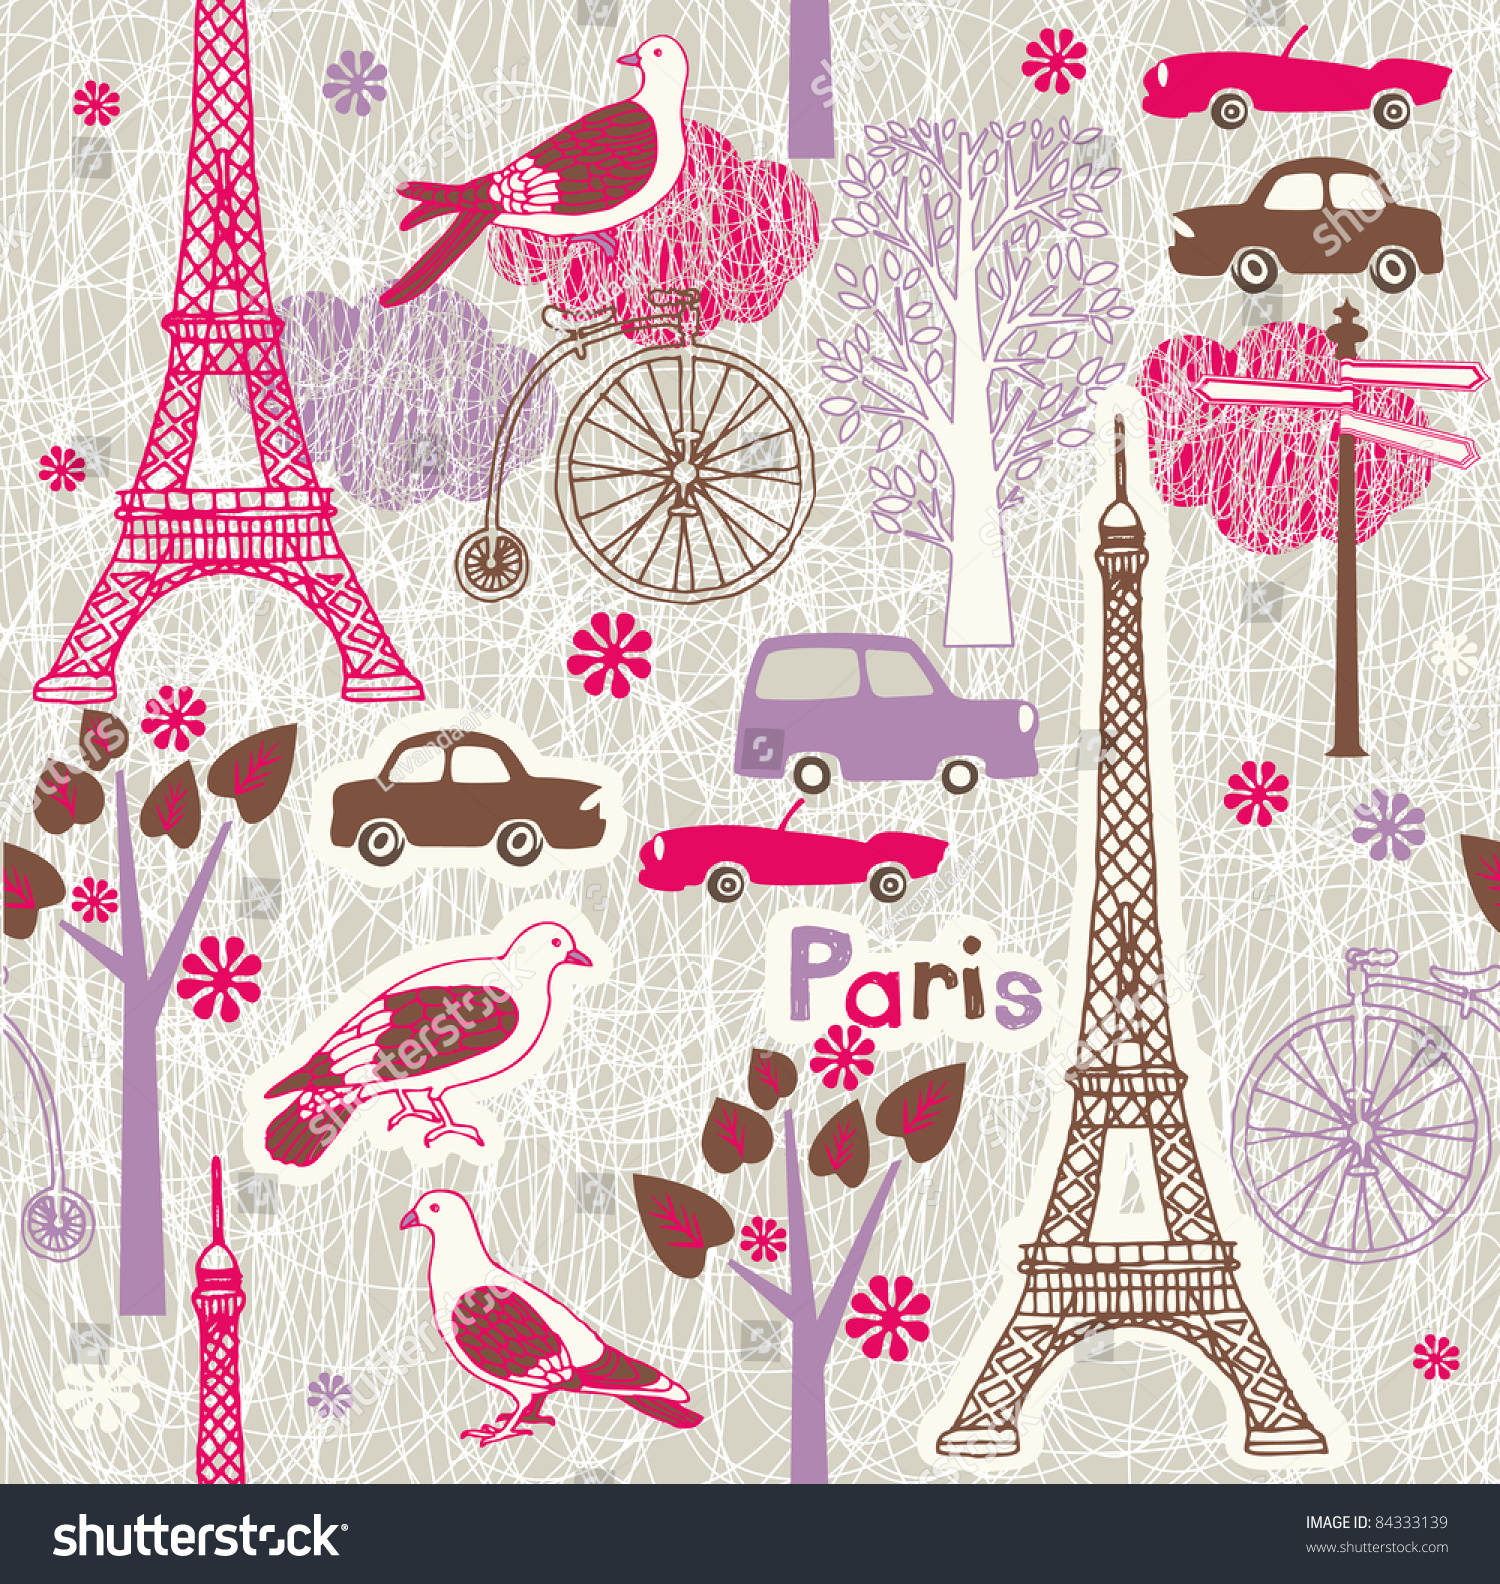 Paris Stock Vector Illustration 84333139 : Shutterstock